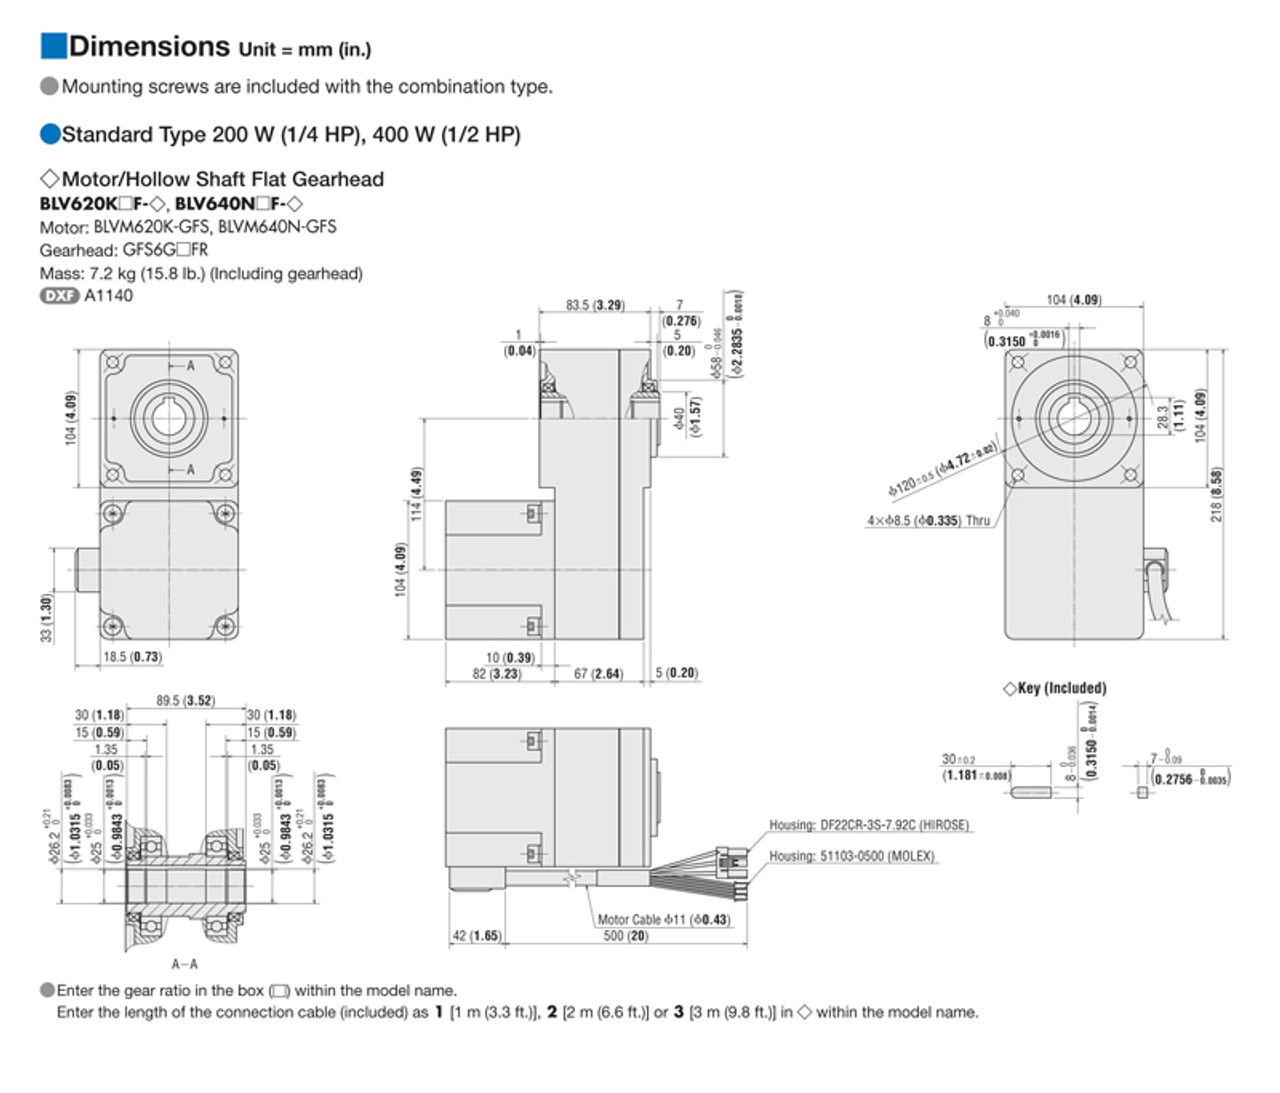 BLV640N15F-3 - Dimensions